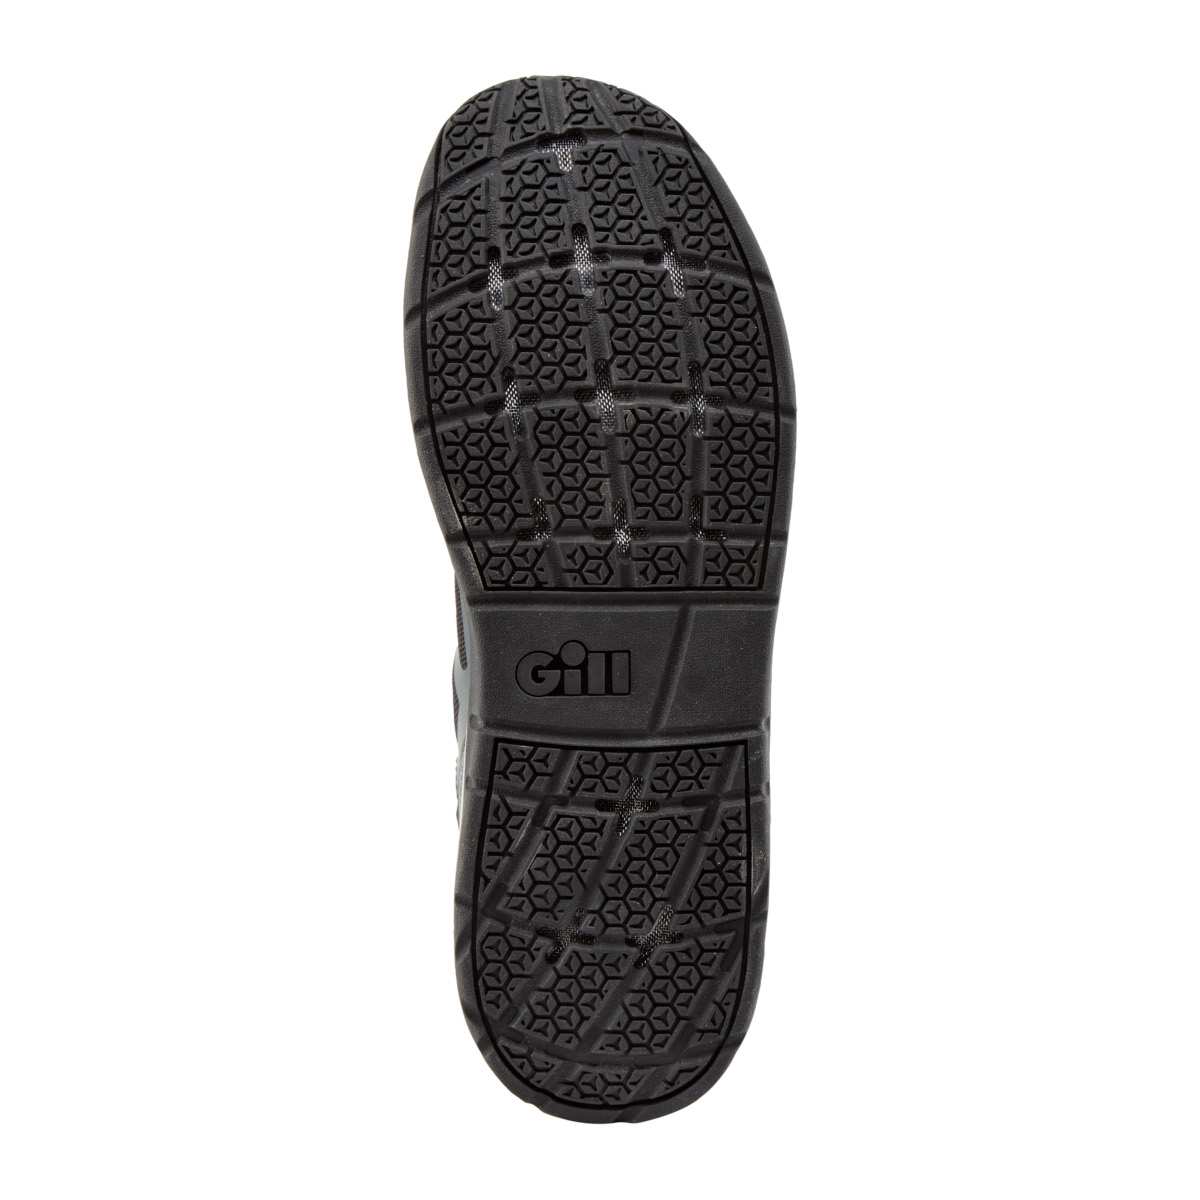 Gill Race chaussure de voile, unisexe - graphite, pointure 43